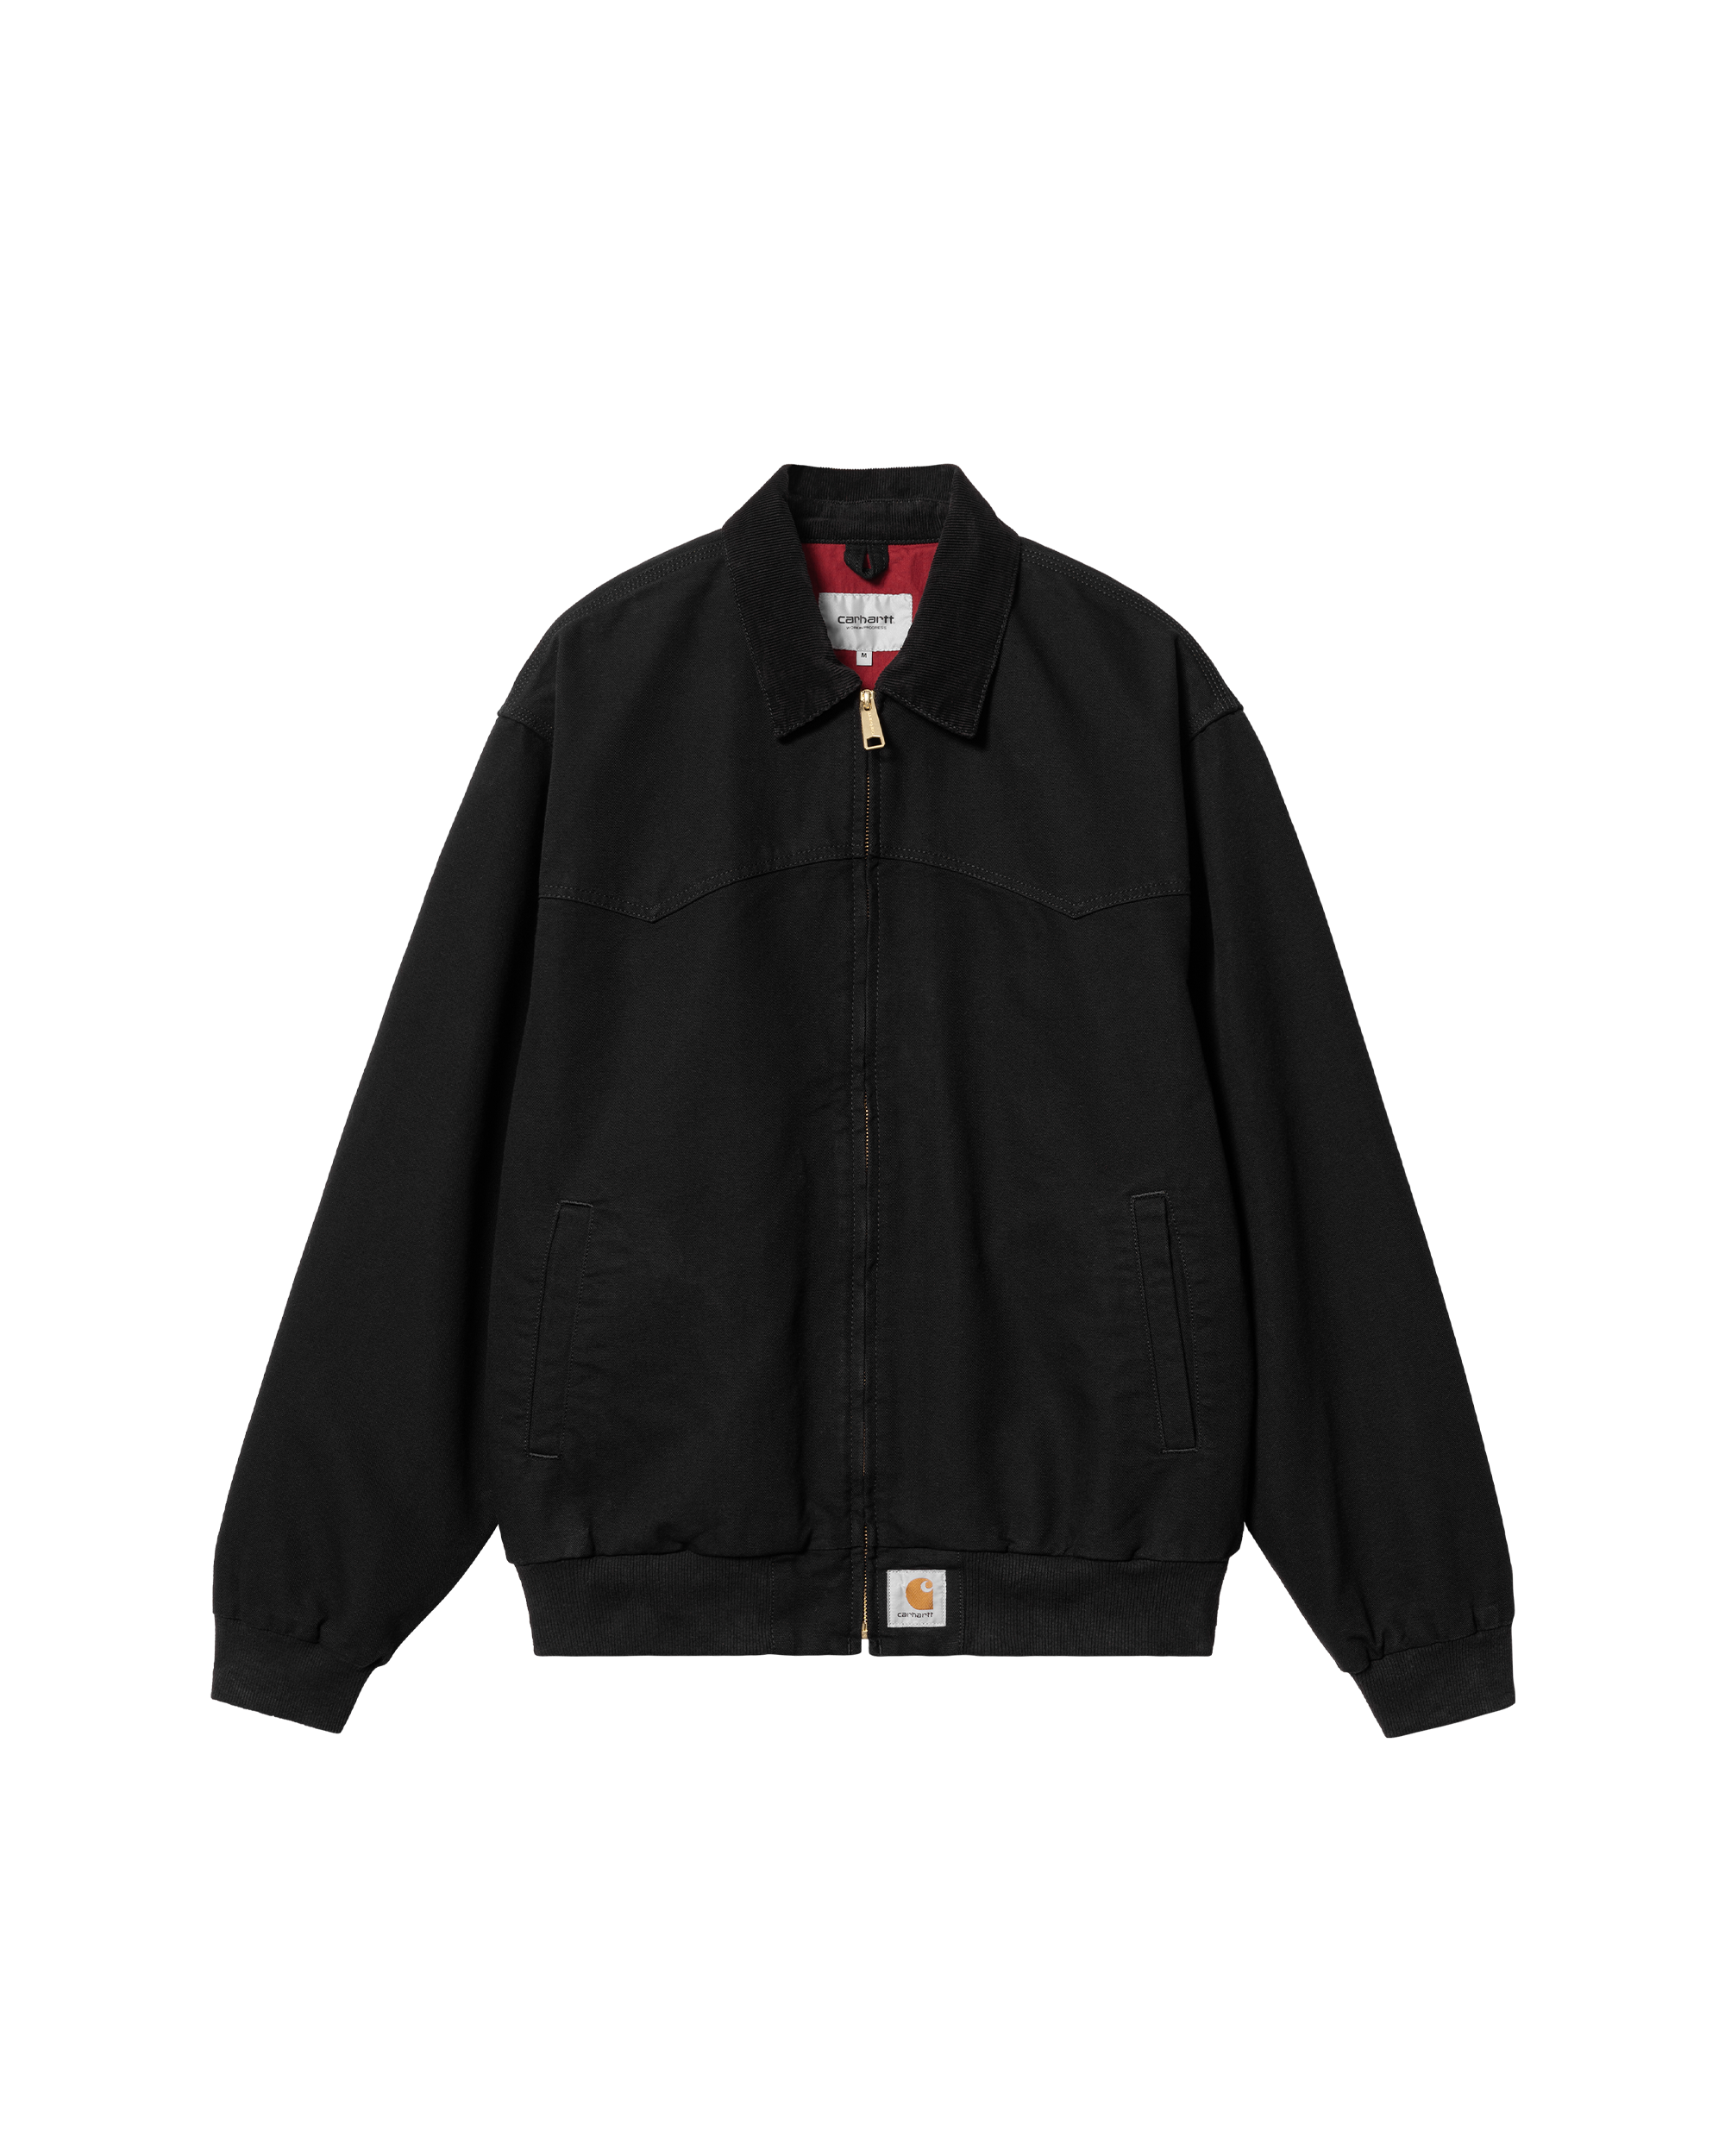 OG Santa Fe Jacket - Black